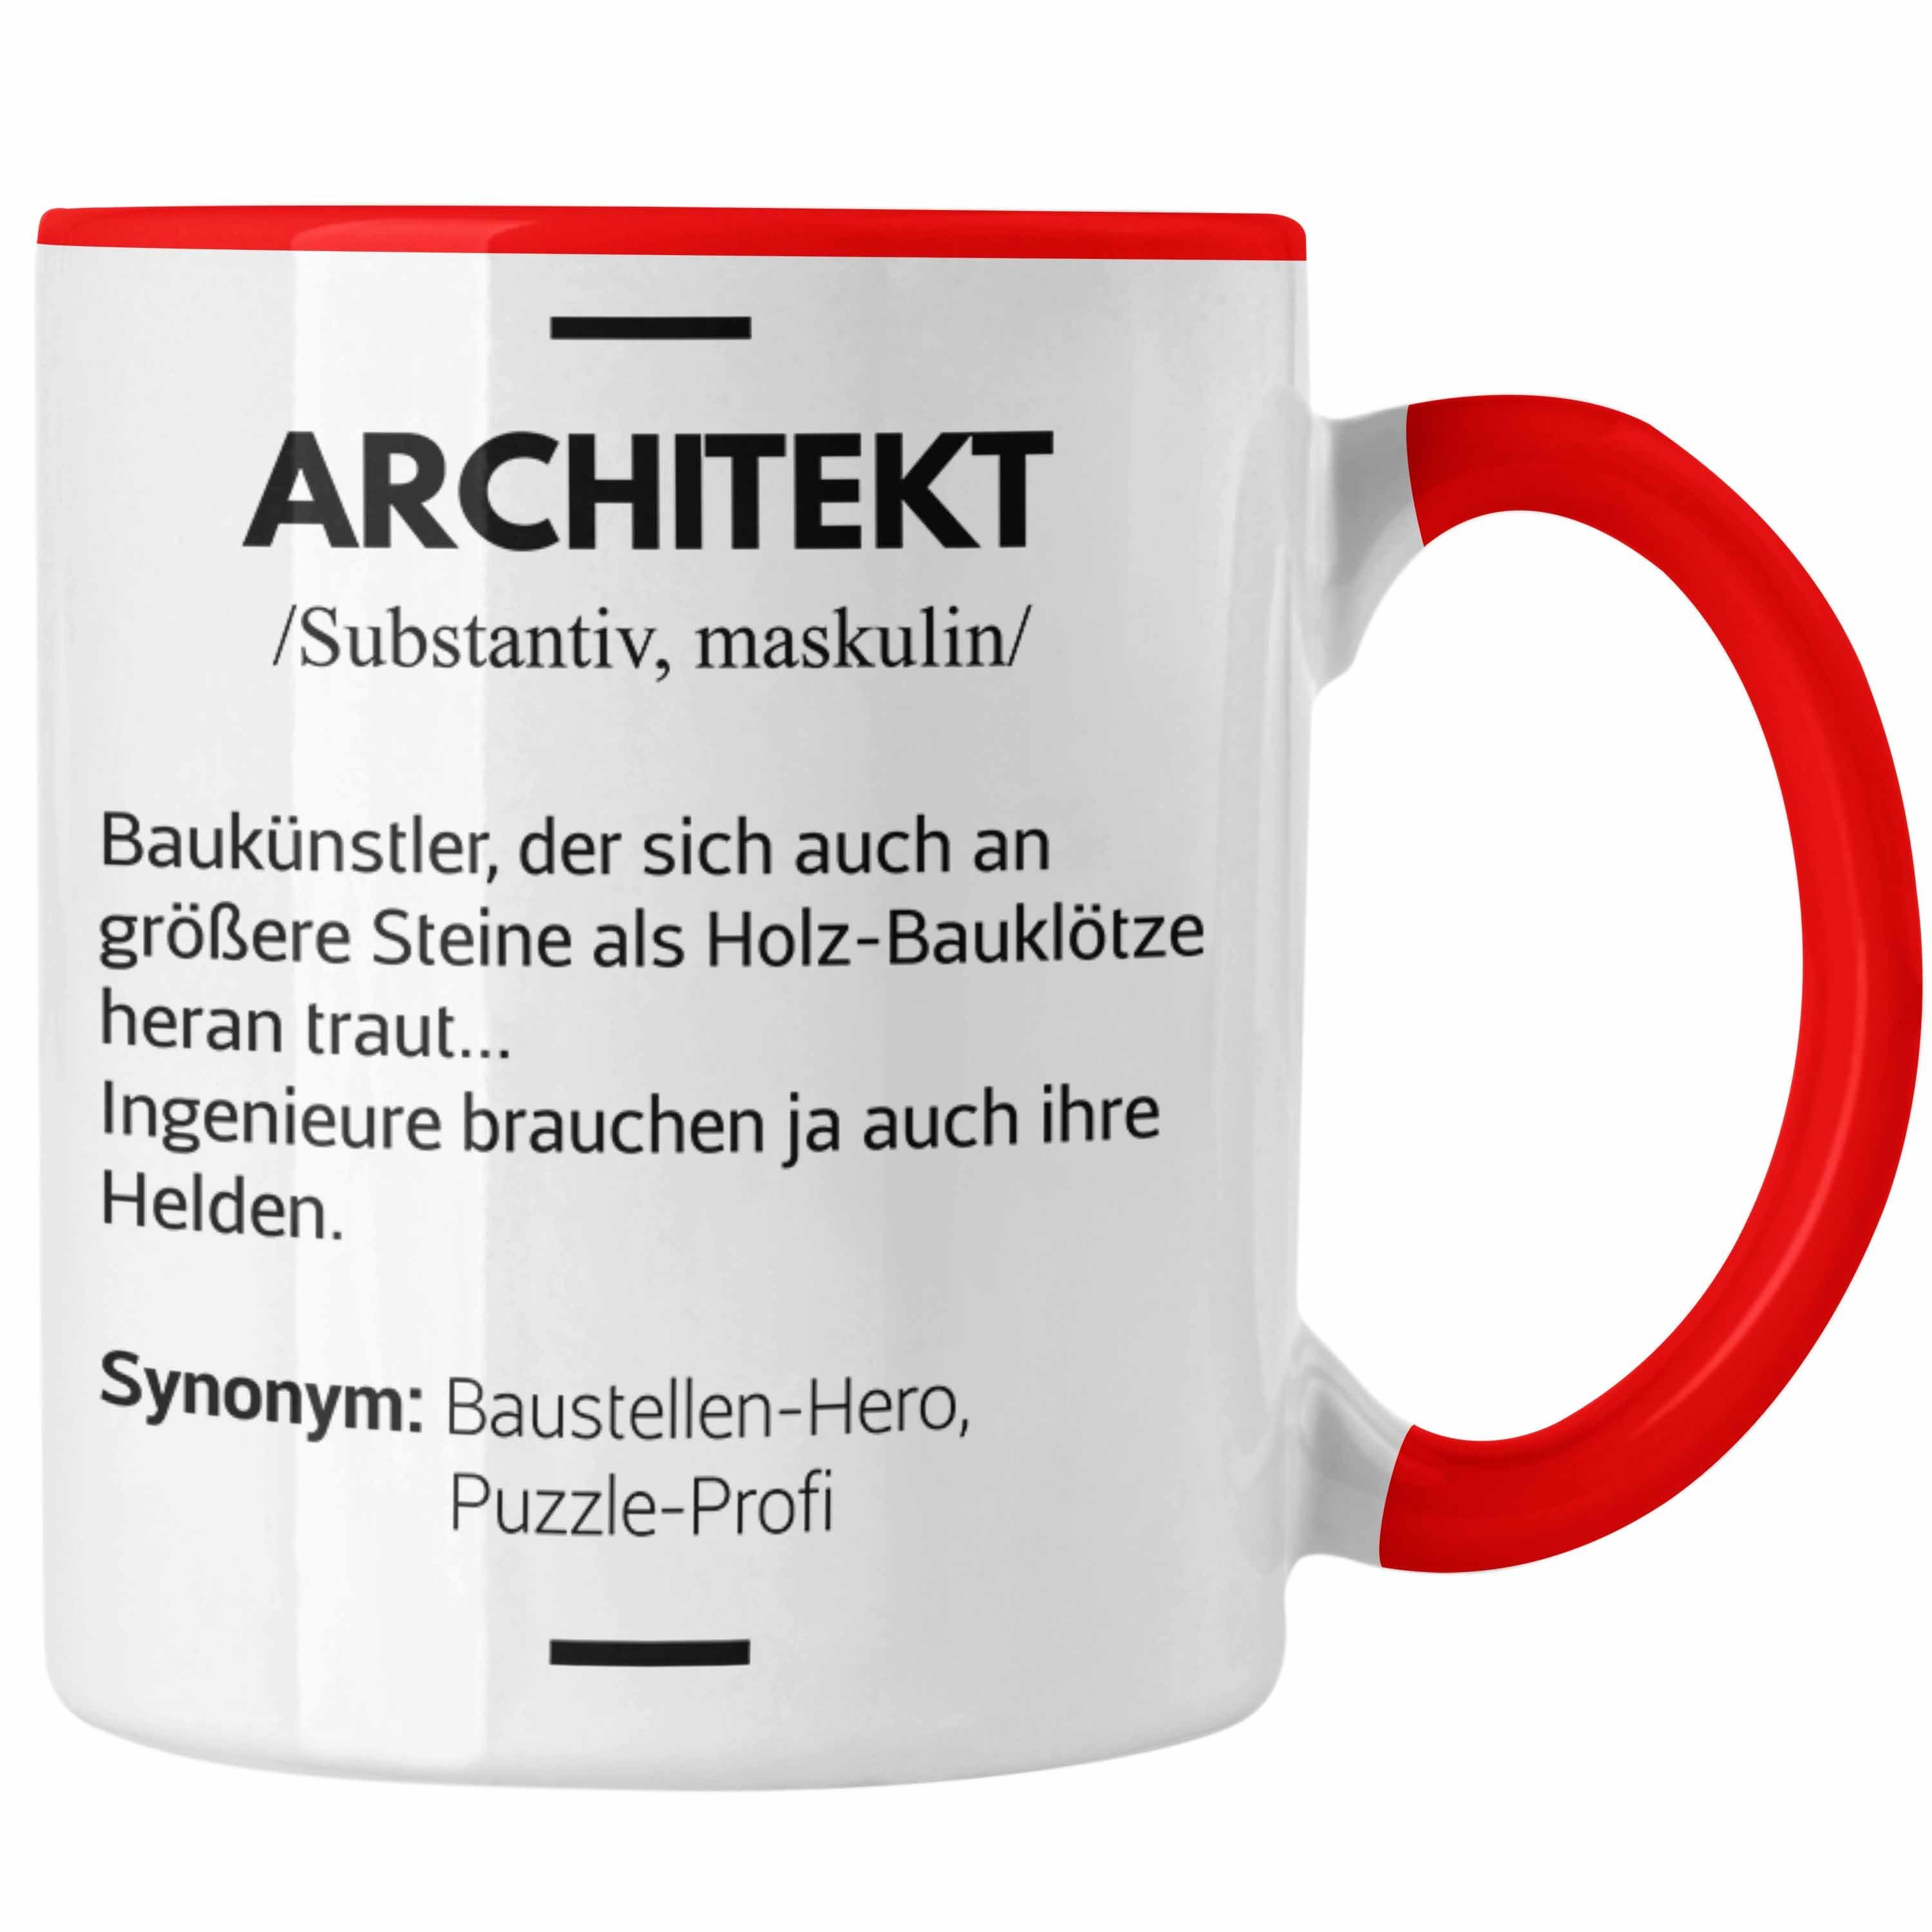 Trendation Tasse Trendation - Architekt Geschenke Tasse Lustig Kaffeetasse mit Spruch Architektur Architekten Geschenkidee Spruch Rot